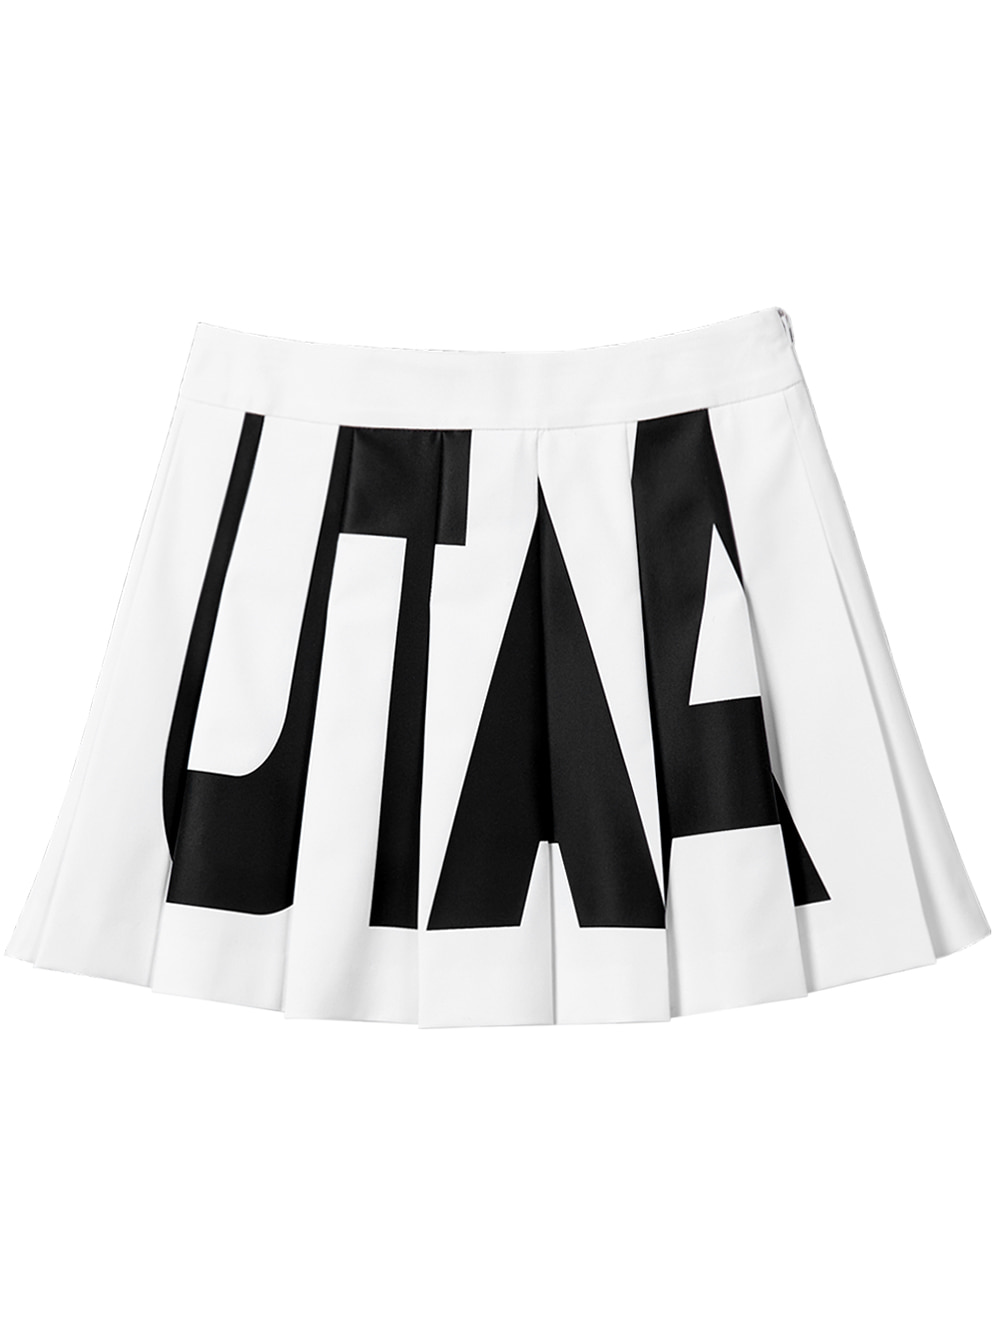 UTAA Bold Logo Flare Fan Skirt : White (UB2SKF112WH)